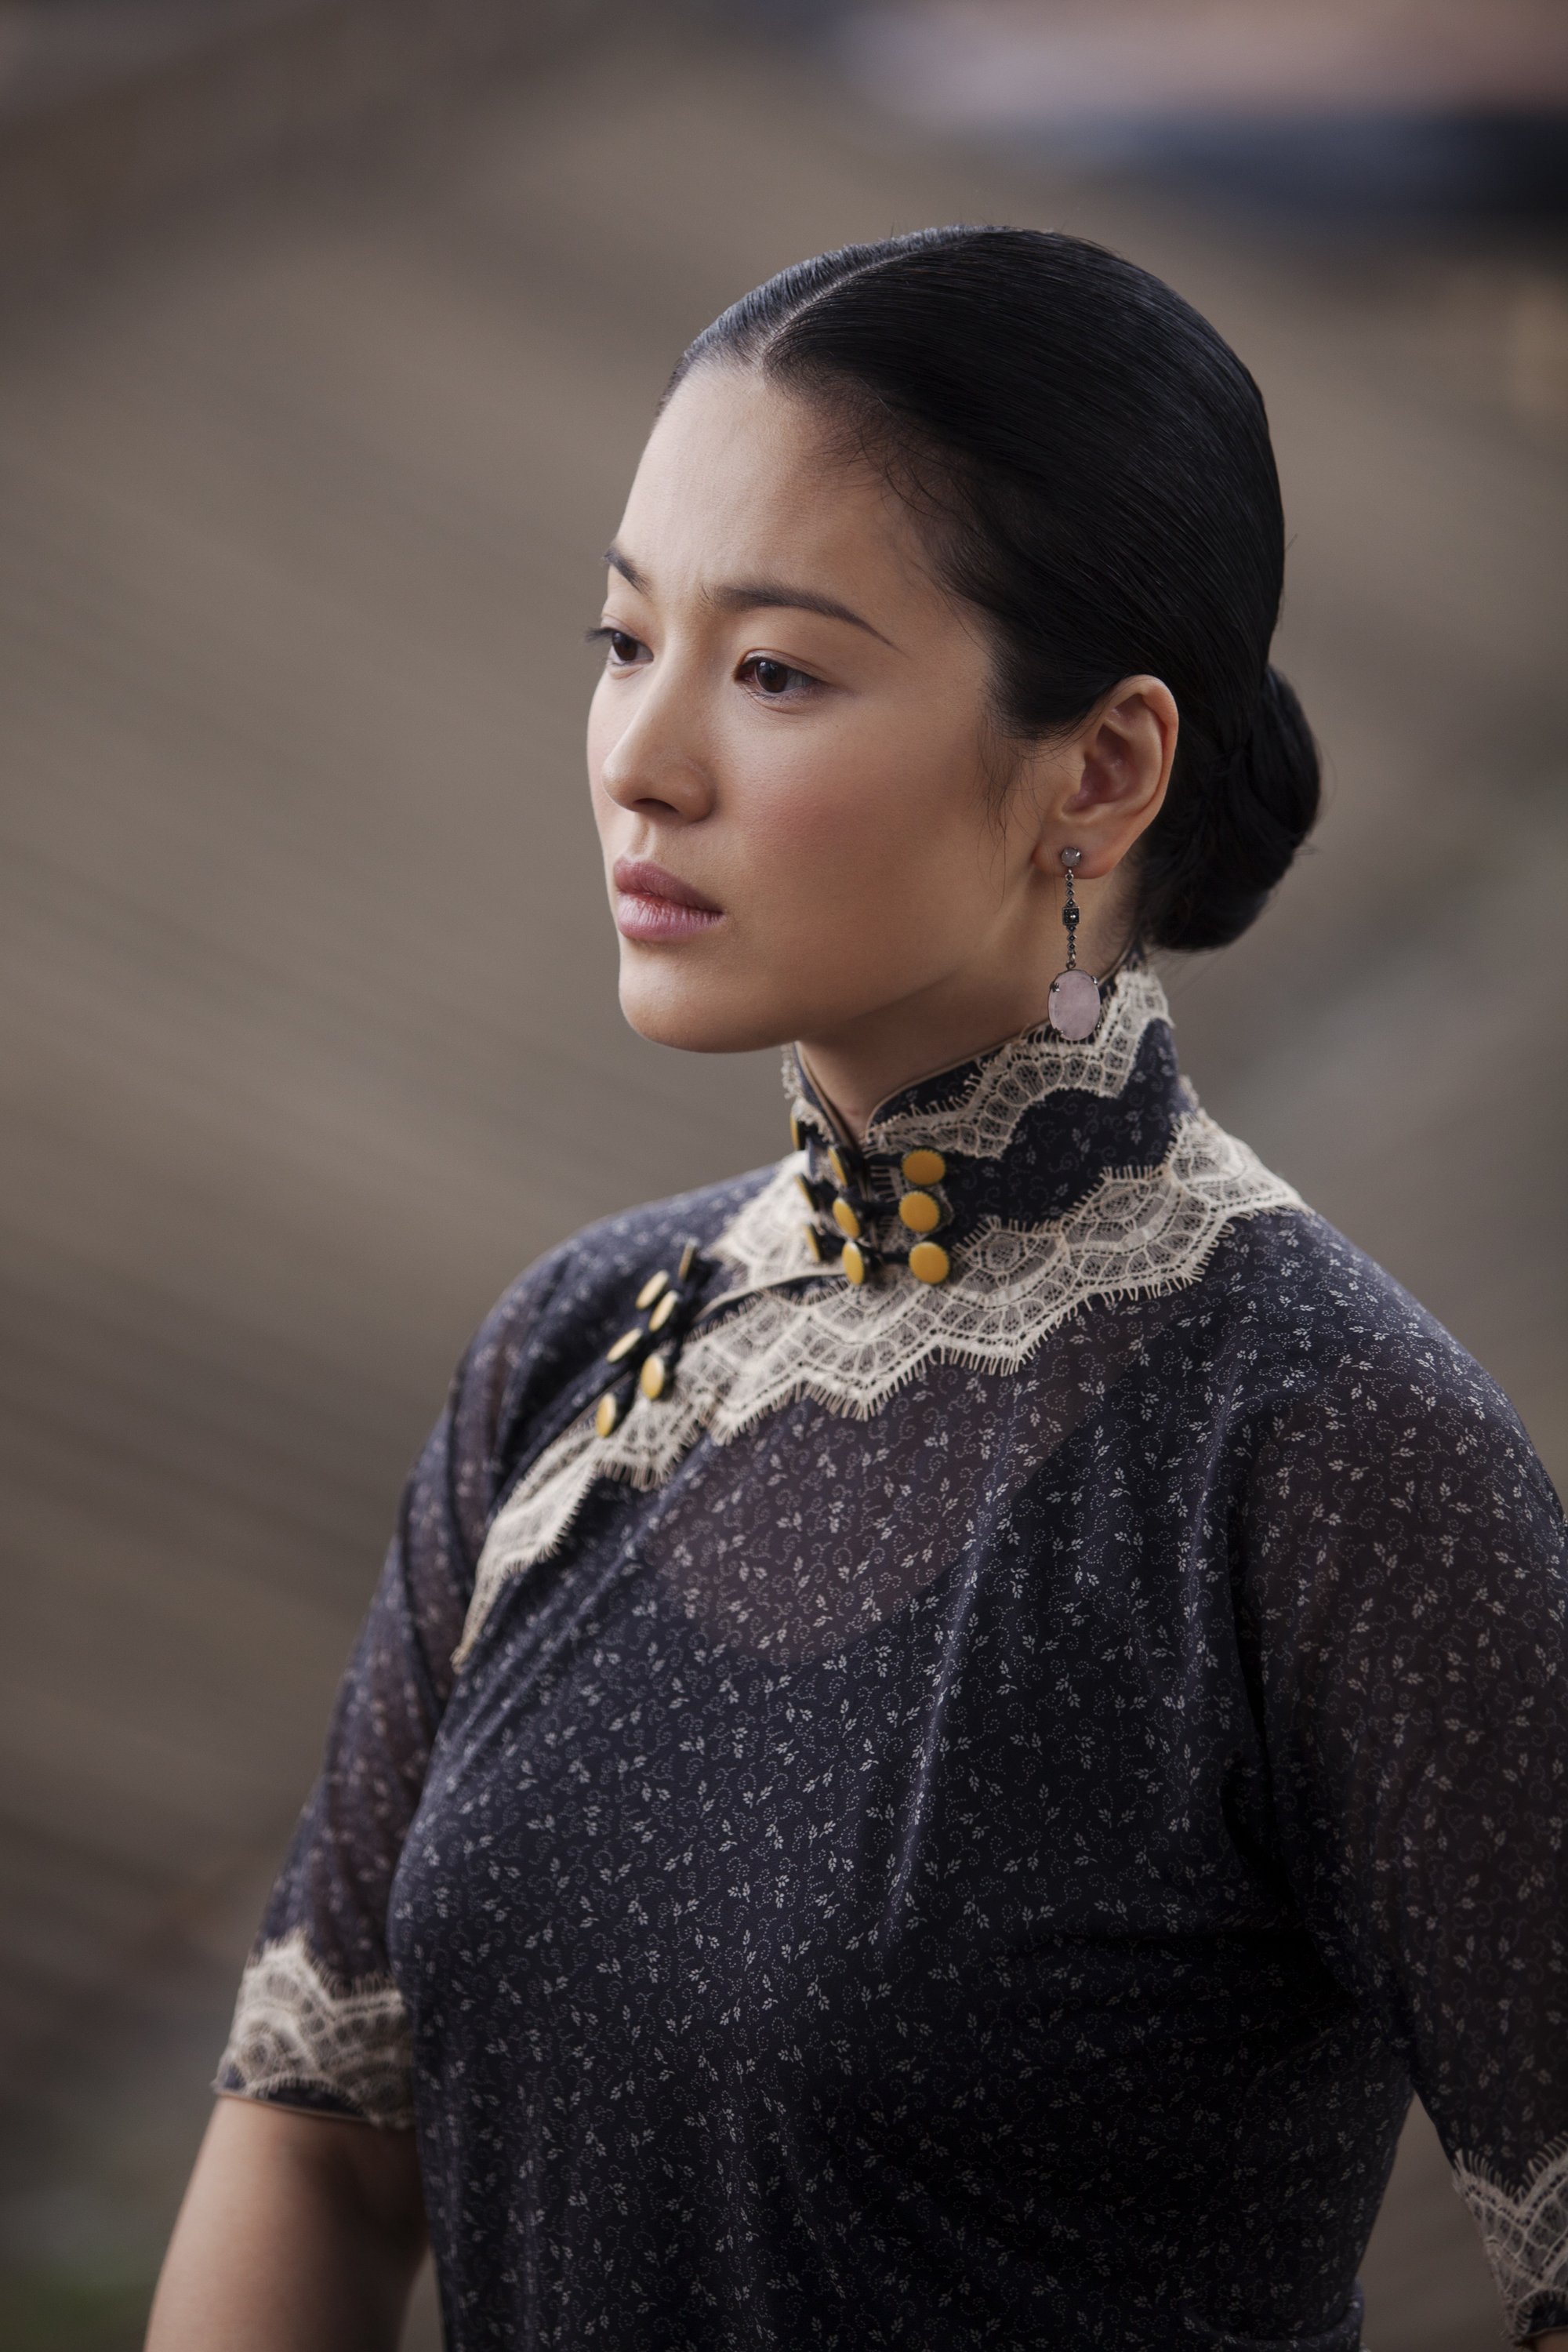 Visual cực đỉnh của Song Hye Kyo ở phim Trung được ''đào lại'', netizen bất bình vì đẹp nức nở mà chỉ lên hình 6 phút - ảnh 7